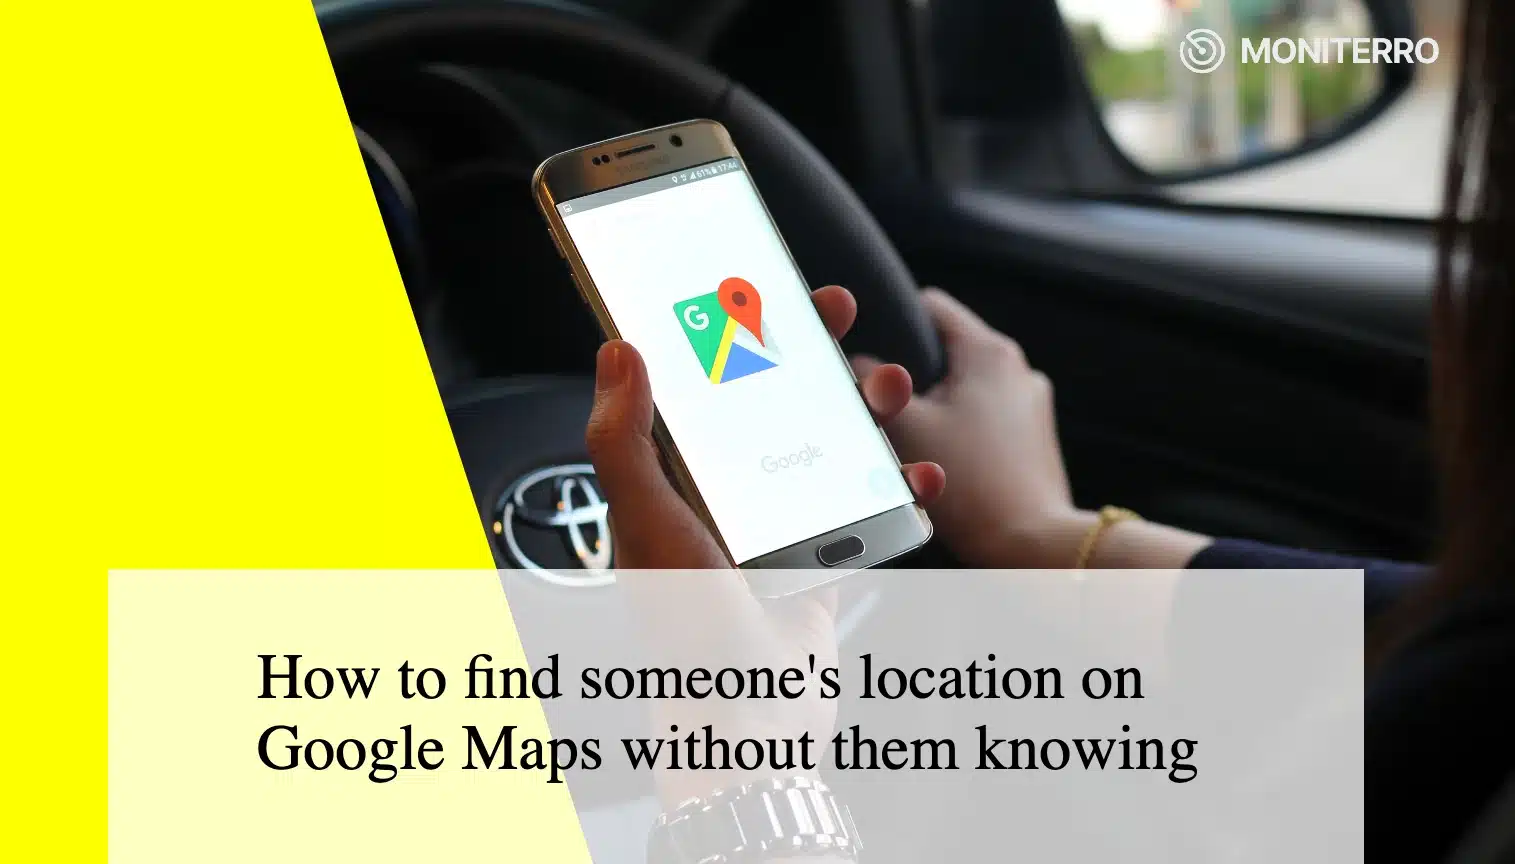 Come trovare la posizione di una persona su Google Maps senza che questa se ne accorga